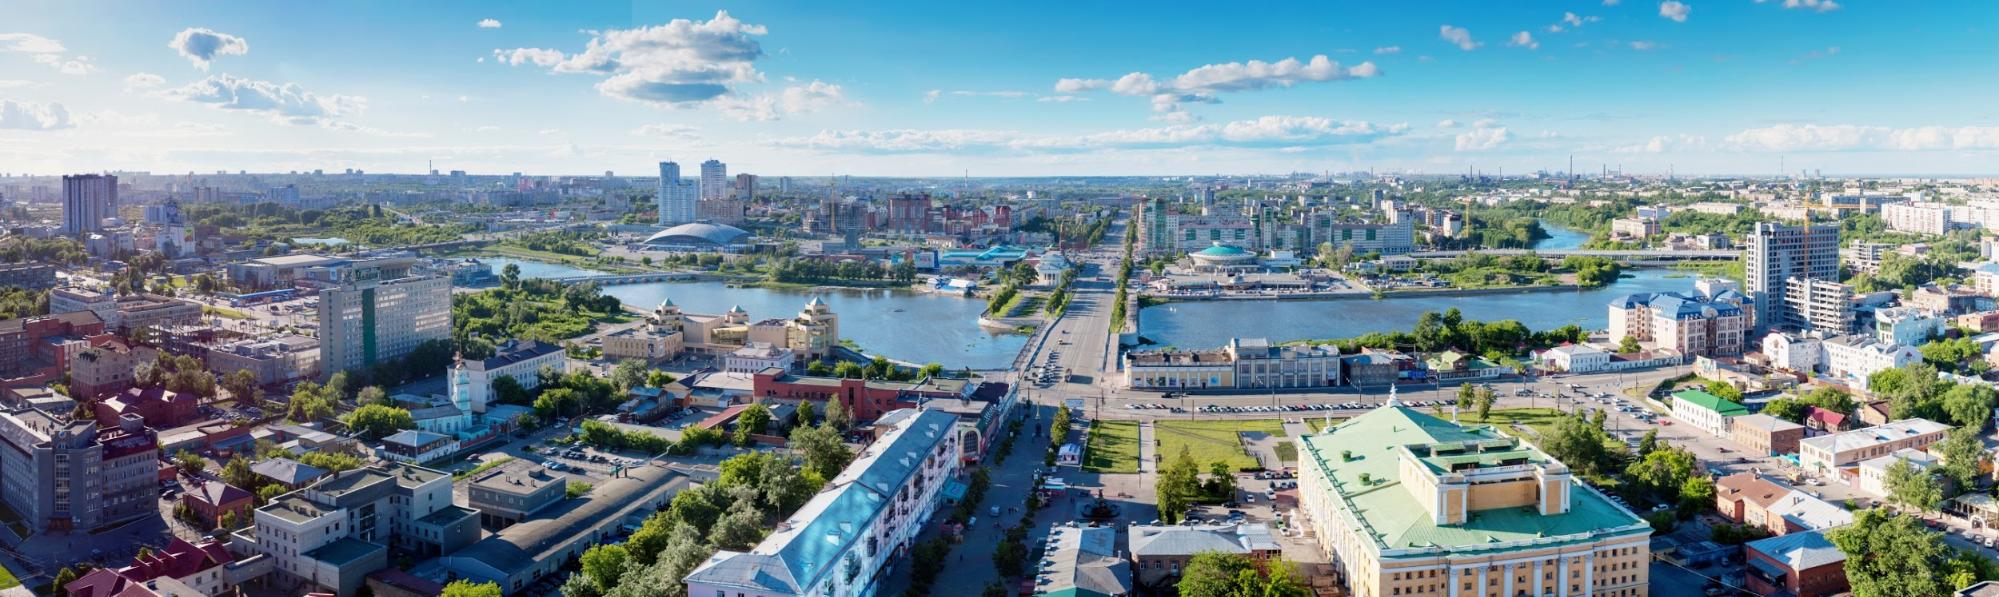 Панорамный снимок центра Челябинска